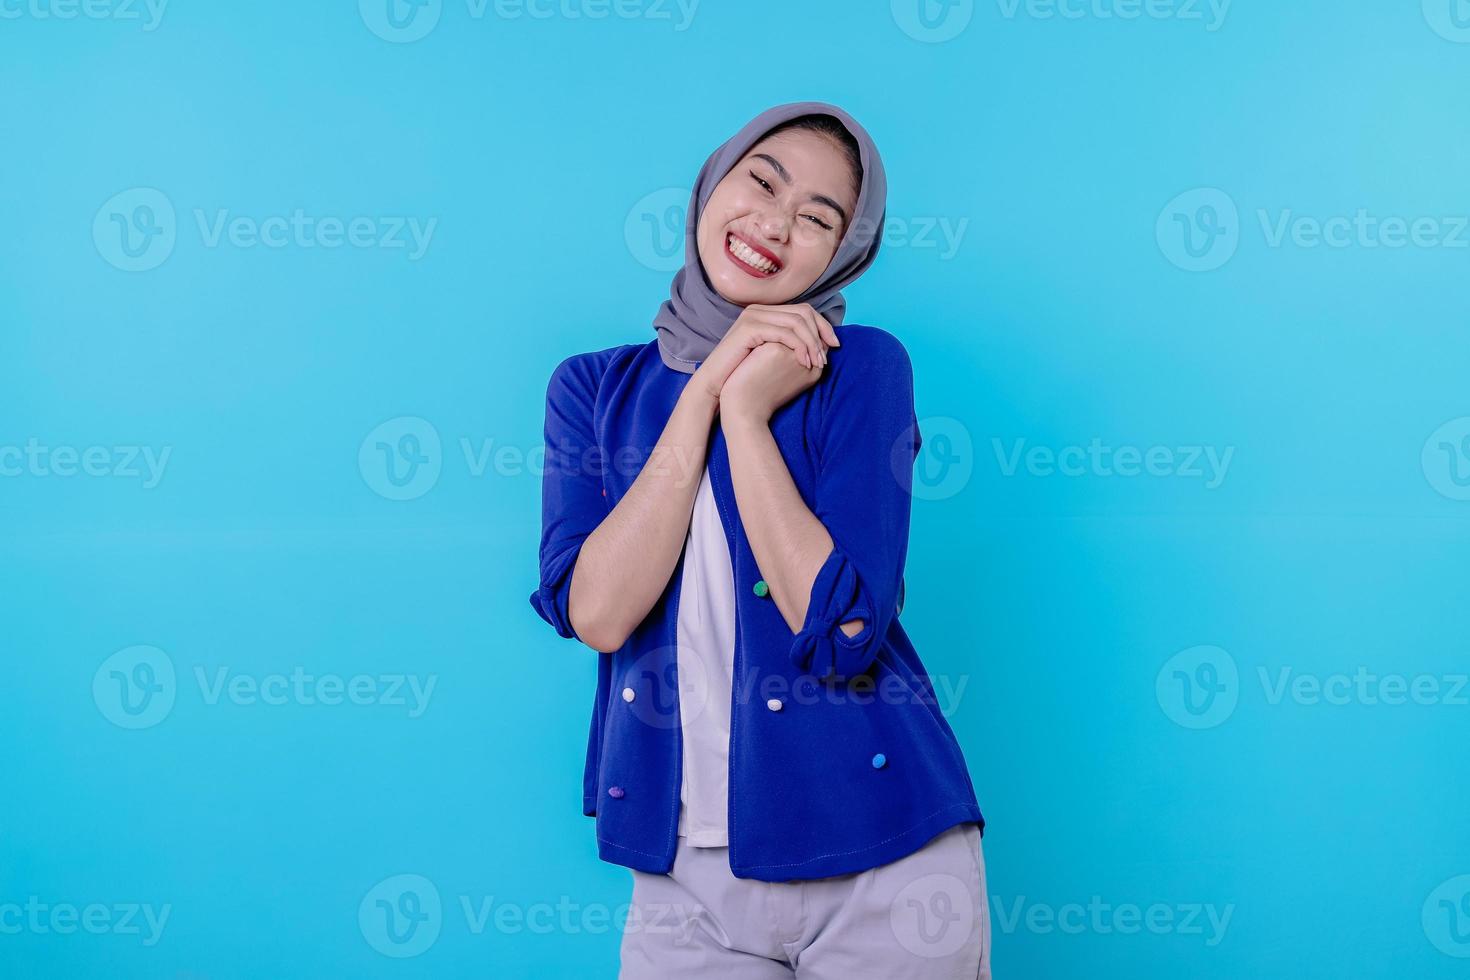 ottimista affascinante giovane donna attraente con un simpatico sorriso gioioso con un bel sorriso bianco su sfondo azzurro foto